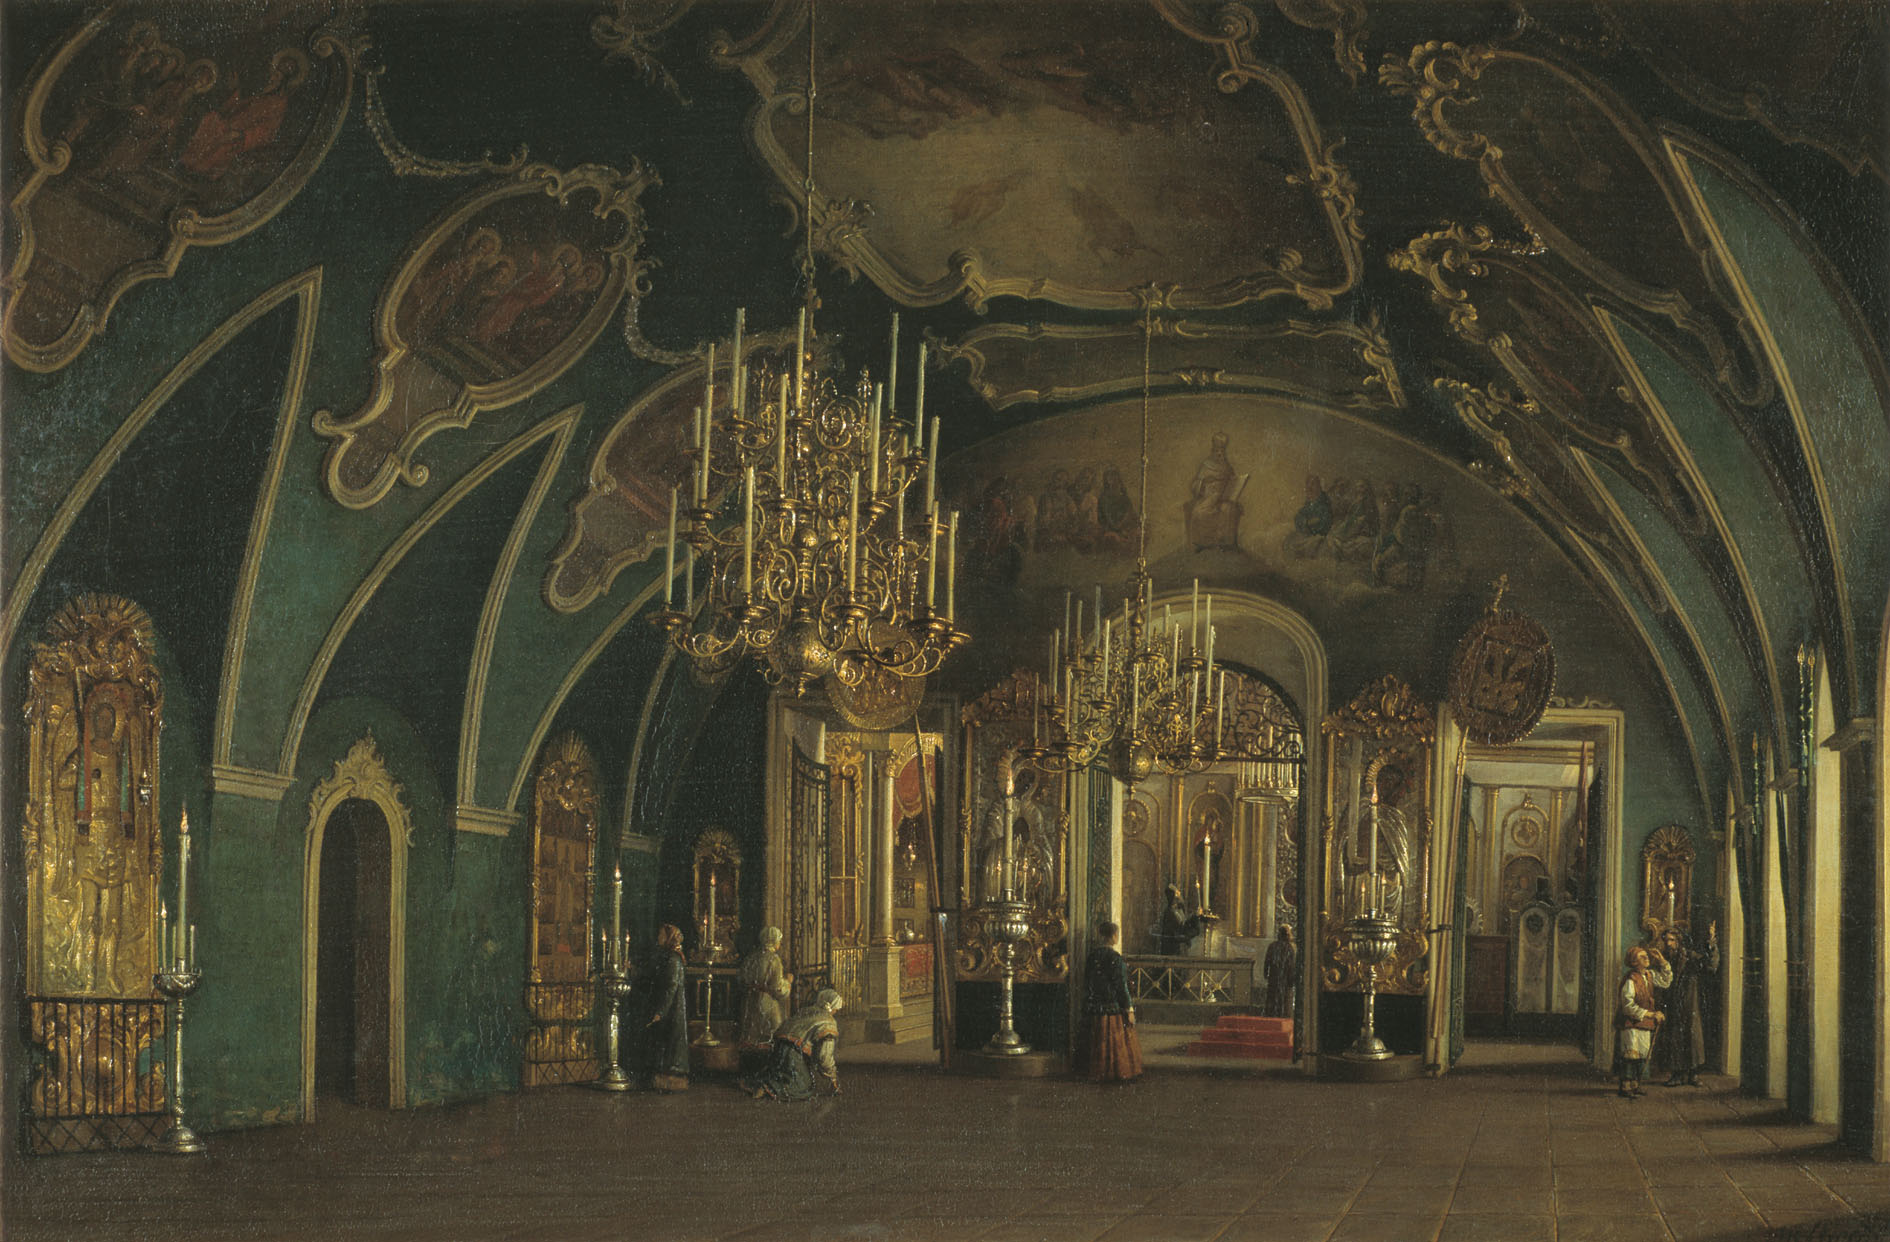 Шухвостов. Внутренний вид Алексеевской церкви Чудова монастыря в Московском Кремле. 1866